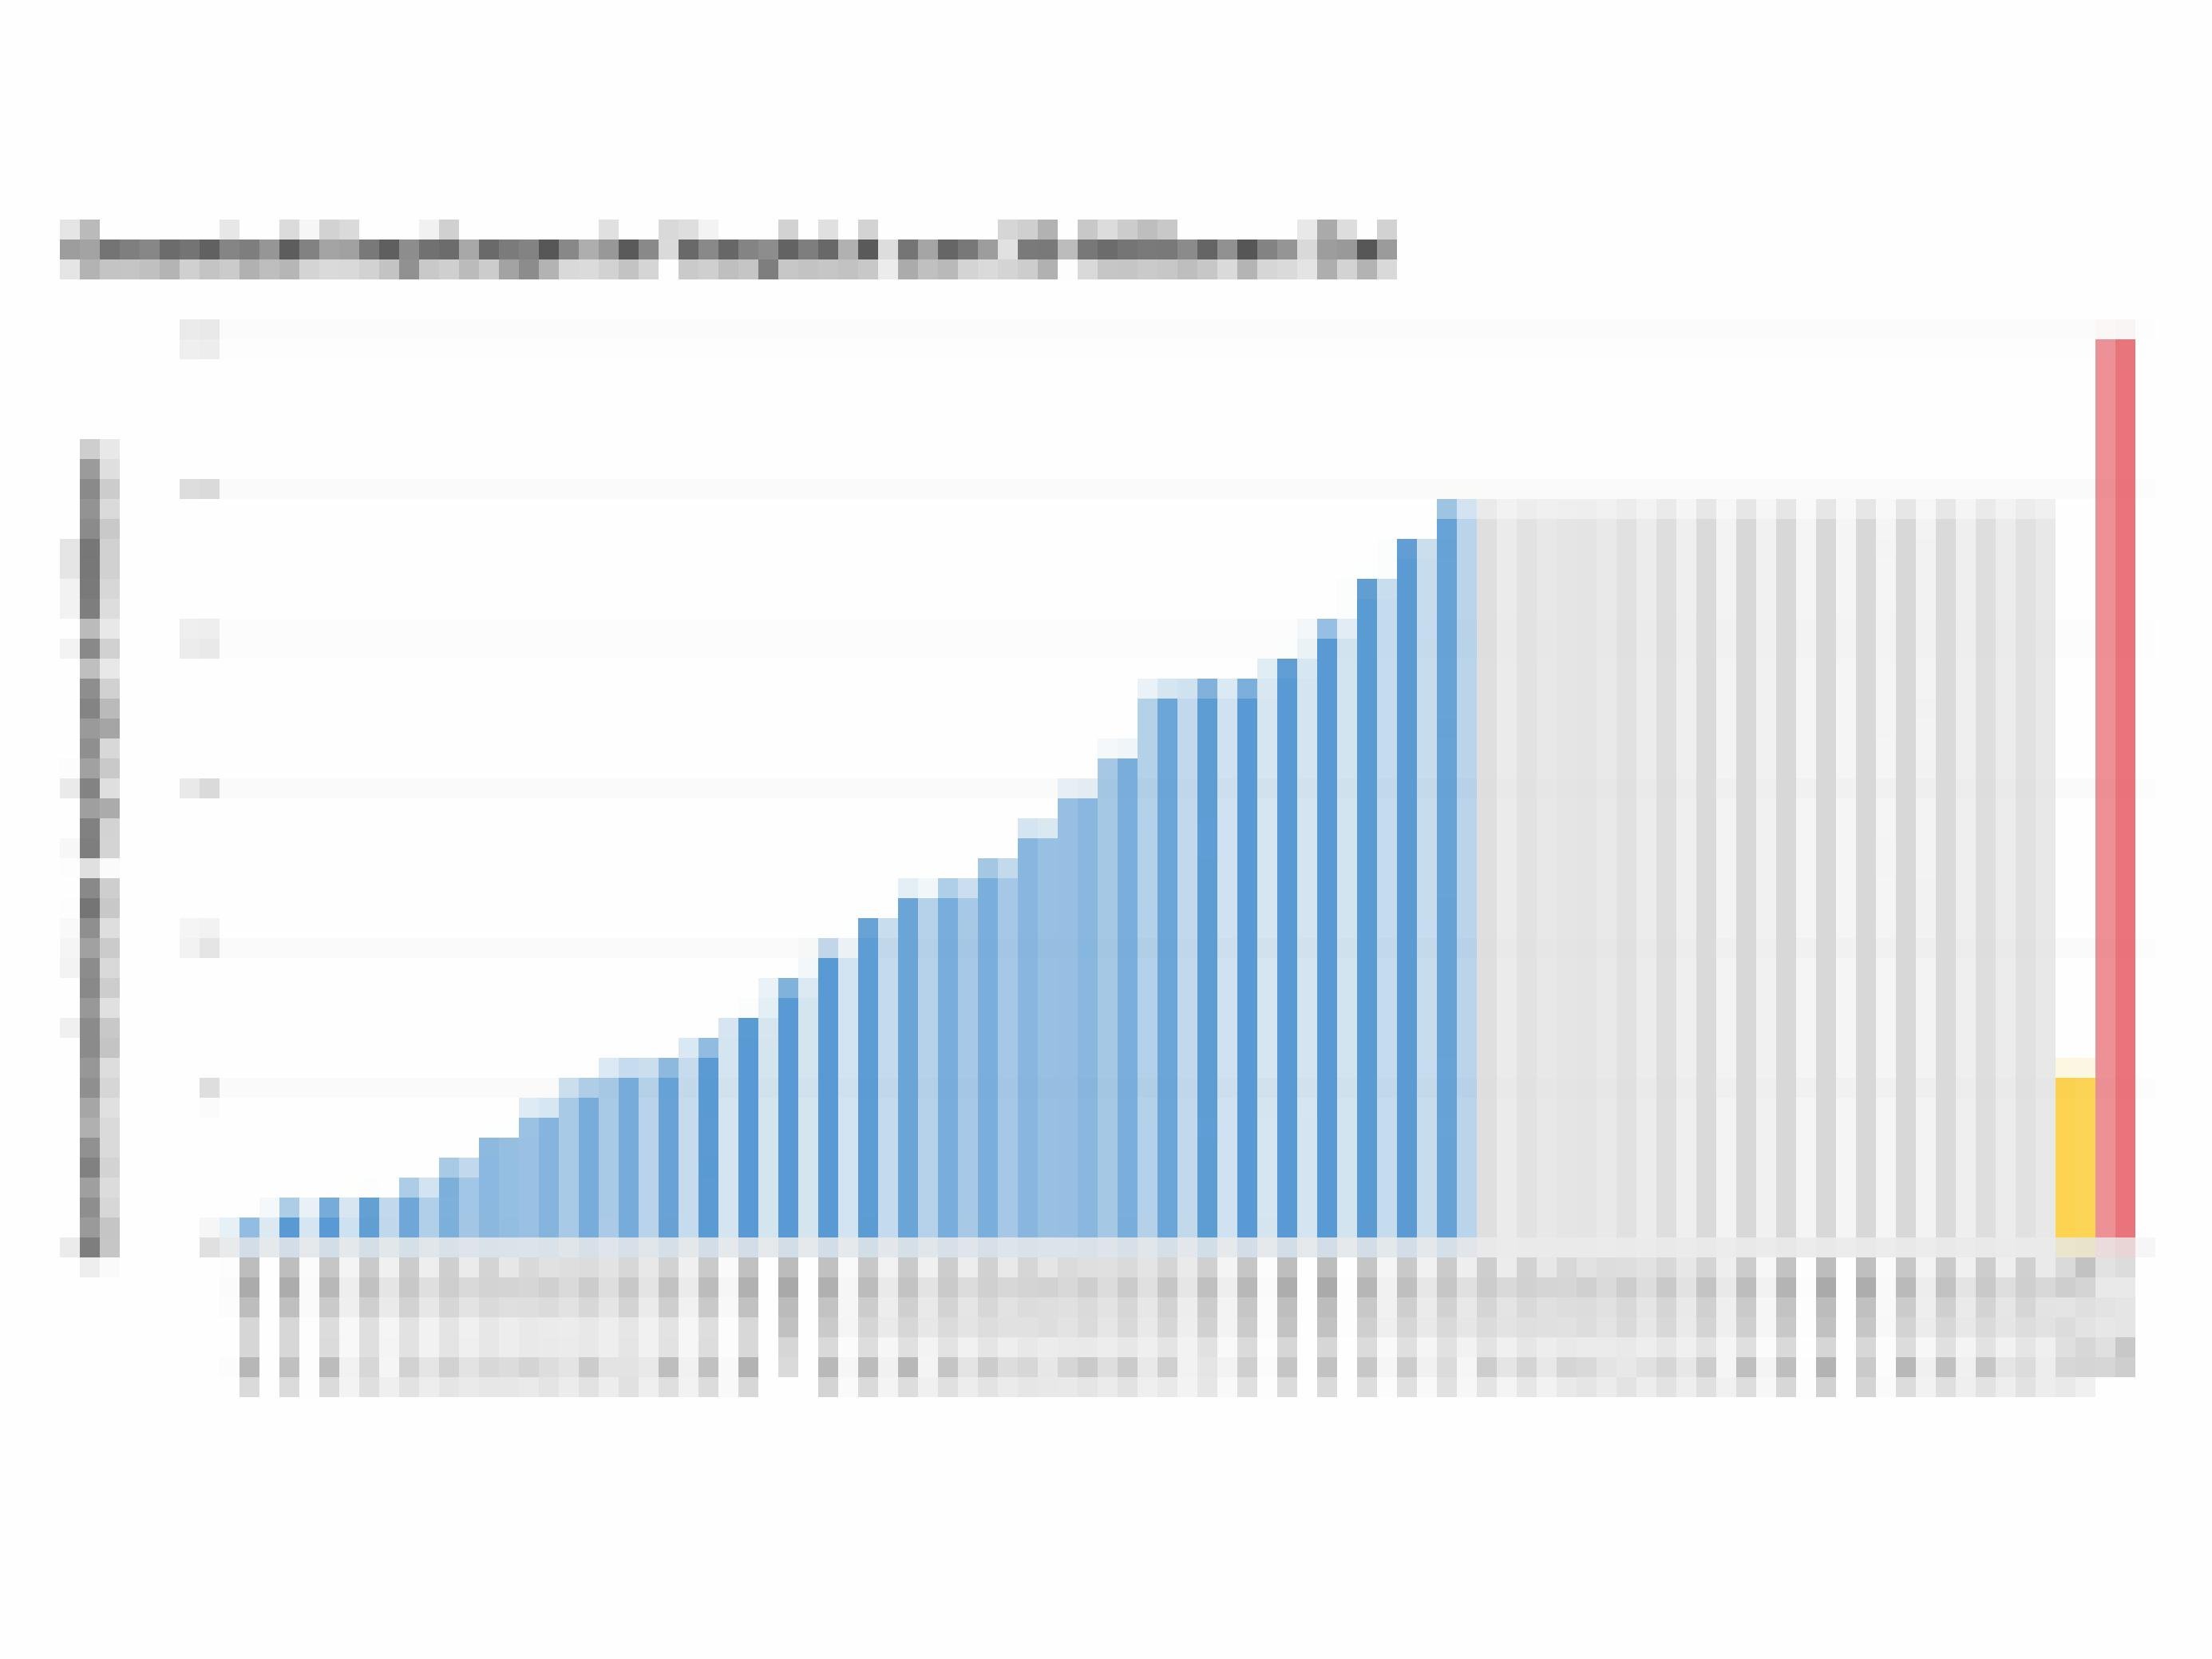 In blau sind die Impfungen summiert, die seit dem Stichtag der Bund-Länder-Konferenz (18.11.2021) verabreicht wurden. Orange zeigt die Zahl der nötigen Impfungen, um das angestrebte Ziel von 30 Millionen Dosen bis 31.12.2021 (rot) zu erreichen.